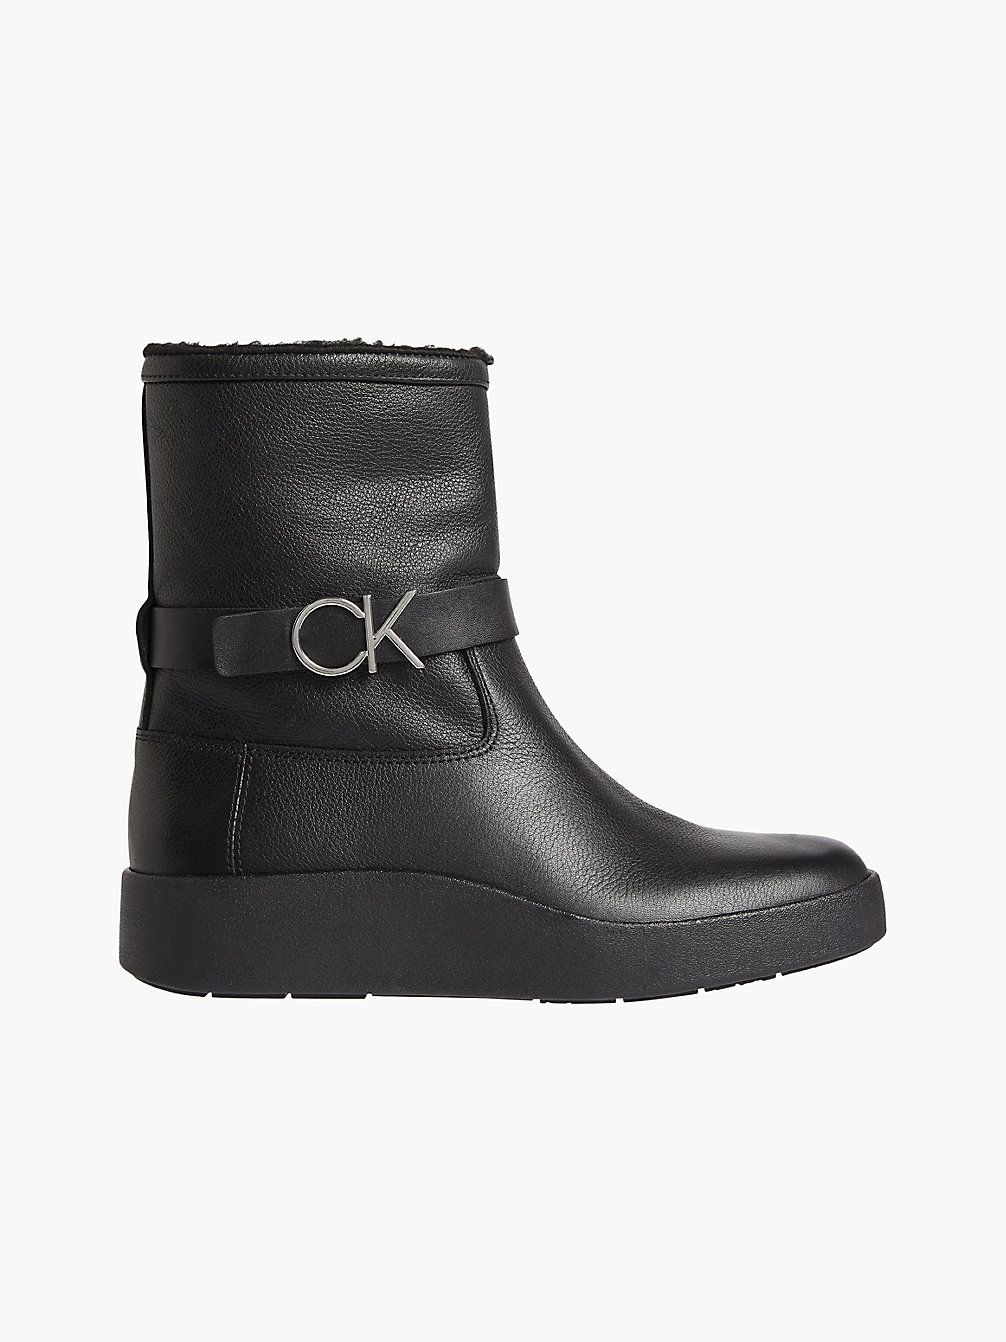 CK BLACK > Кожаные ботильоны > undefined Женщины - Calvin Klein